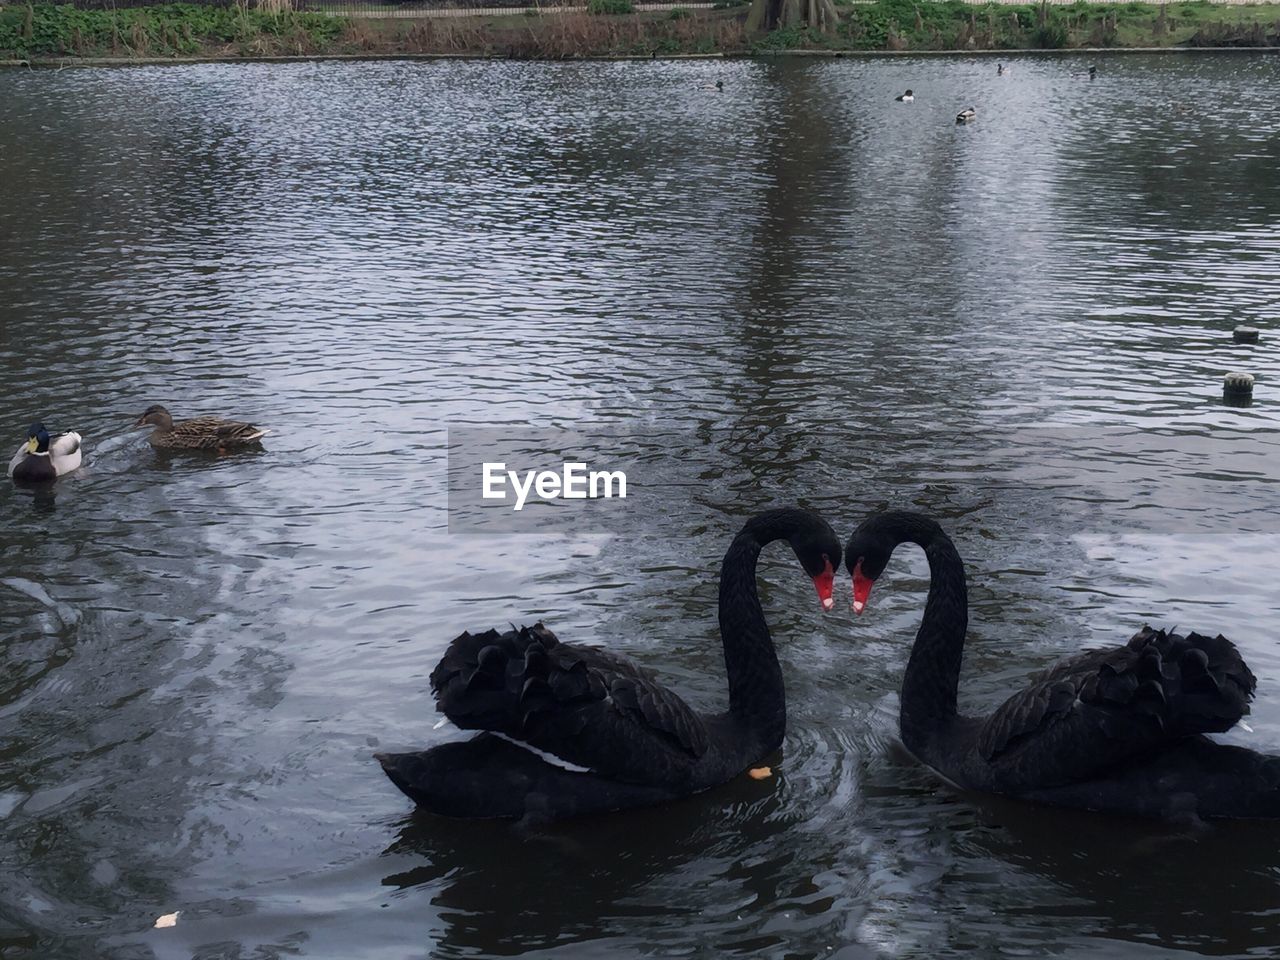 BLACK SWAN SWIMMING IN LAKE